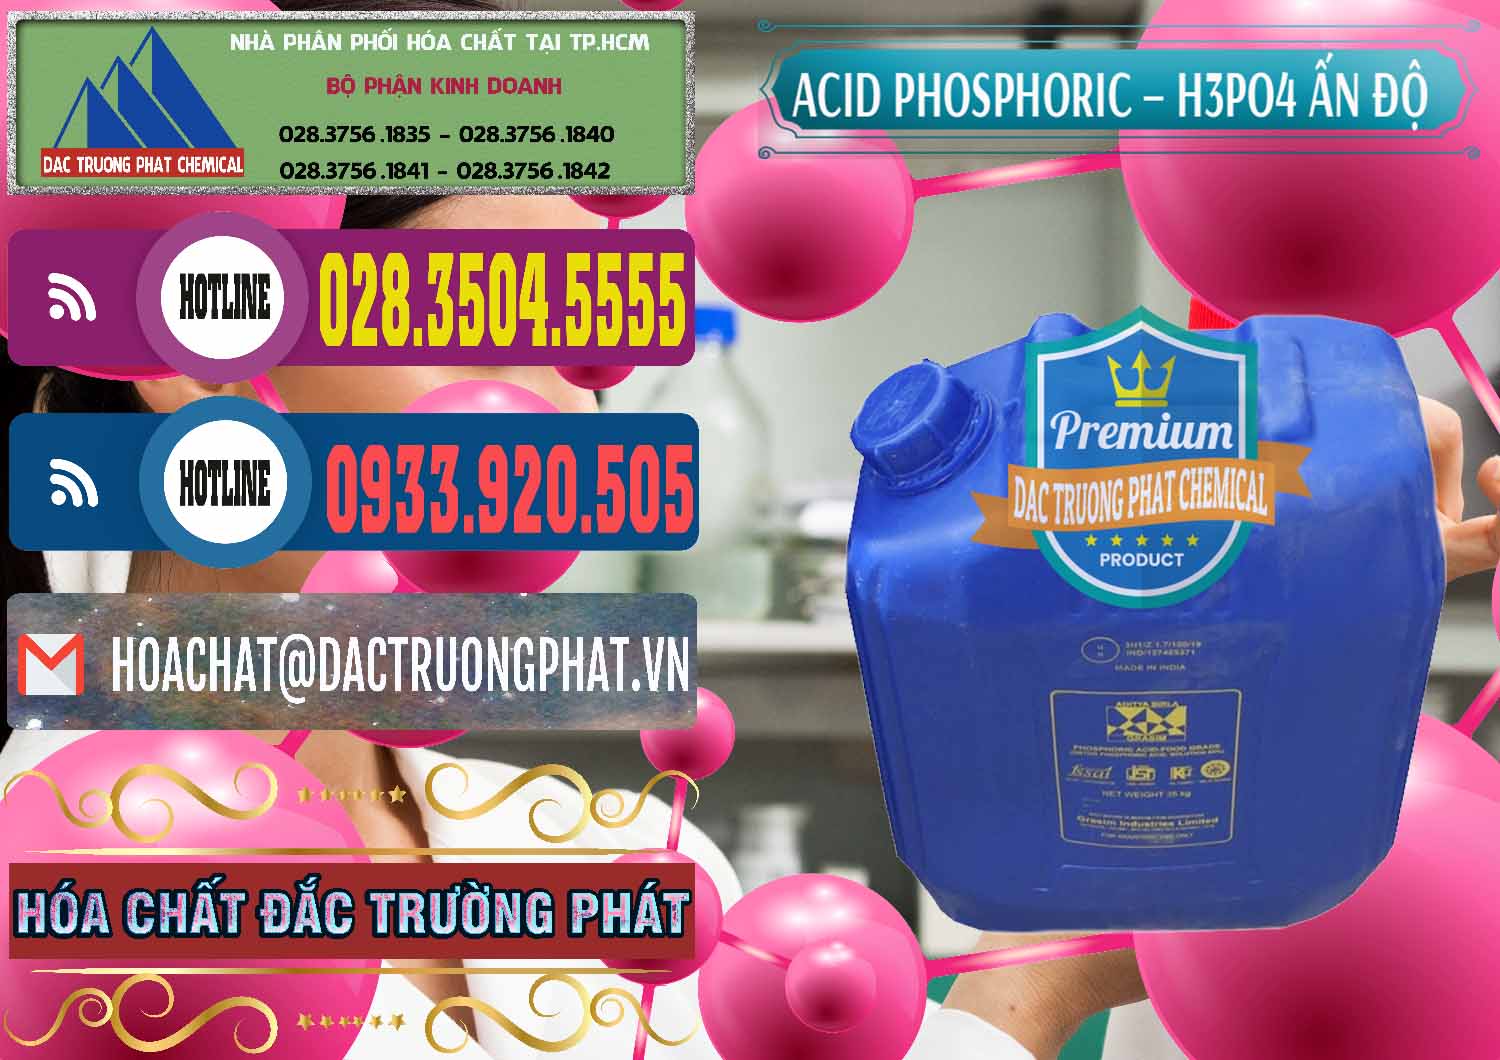 Nơi cung ứng _ bán Axit Phosphoric H3PO4 85% Ấn Độ - 0350 - Chuyên cung cấp & kinh doanh hóa chất tại TP.HCM - muabanhoachat.com.vn